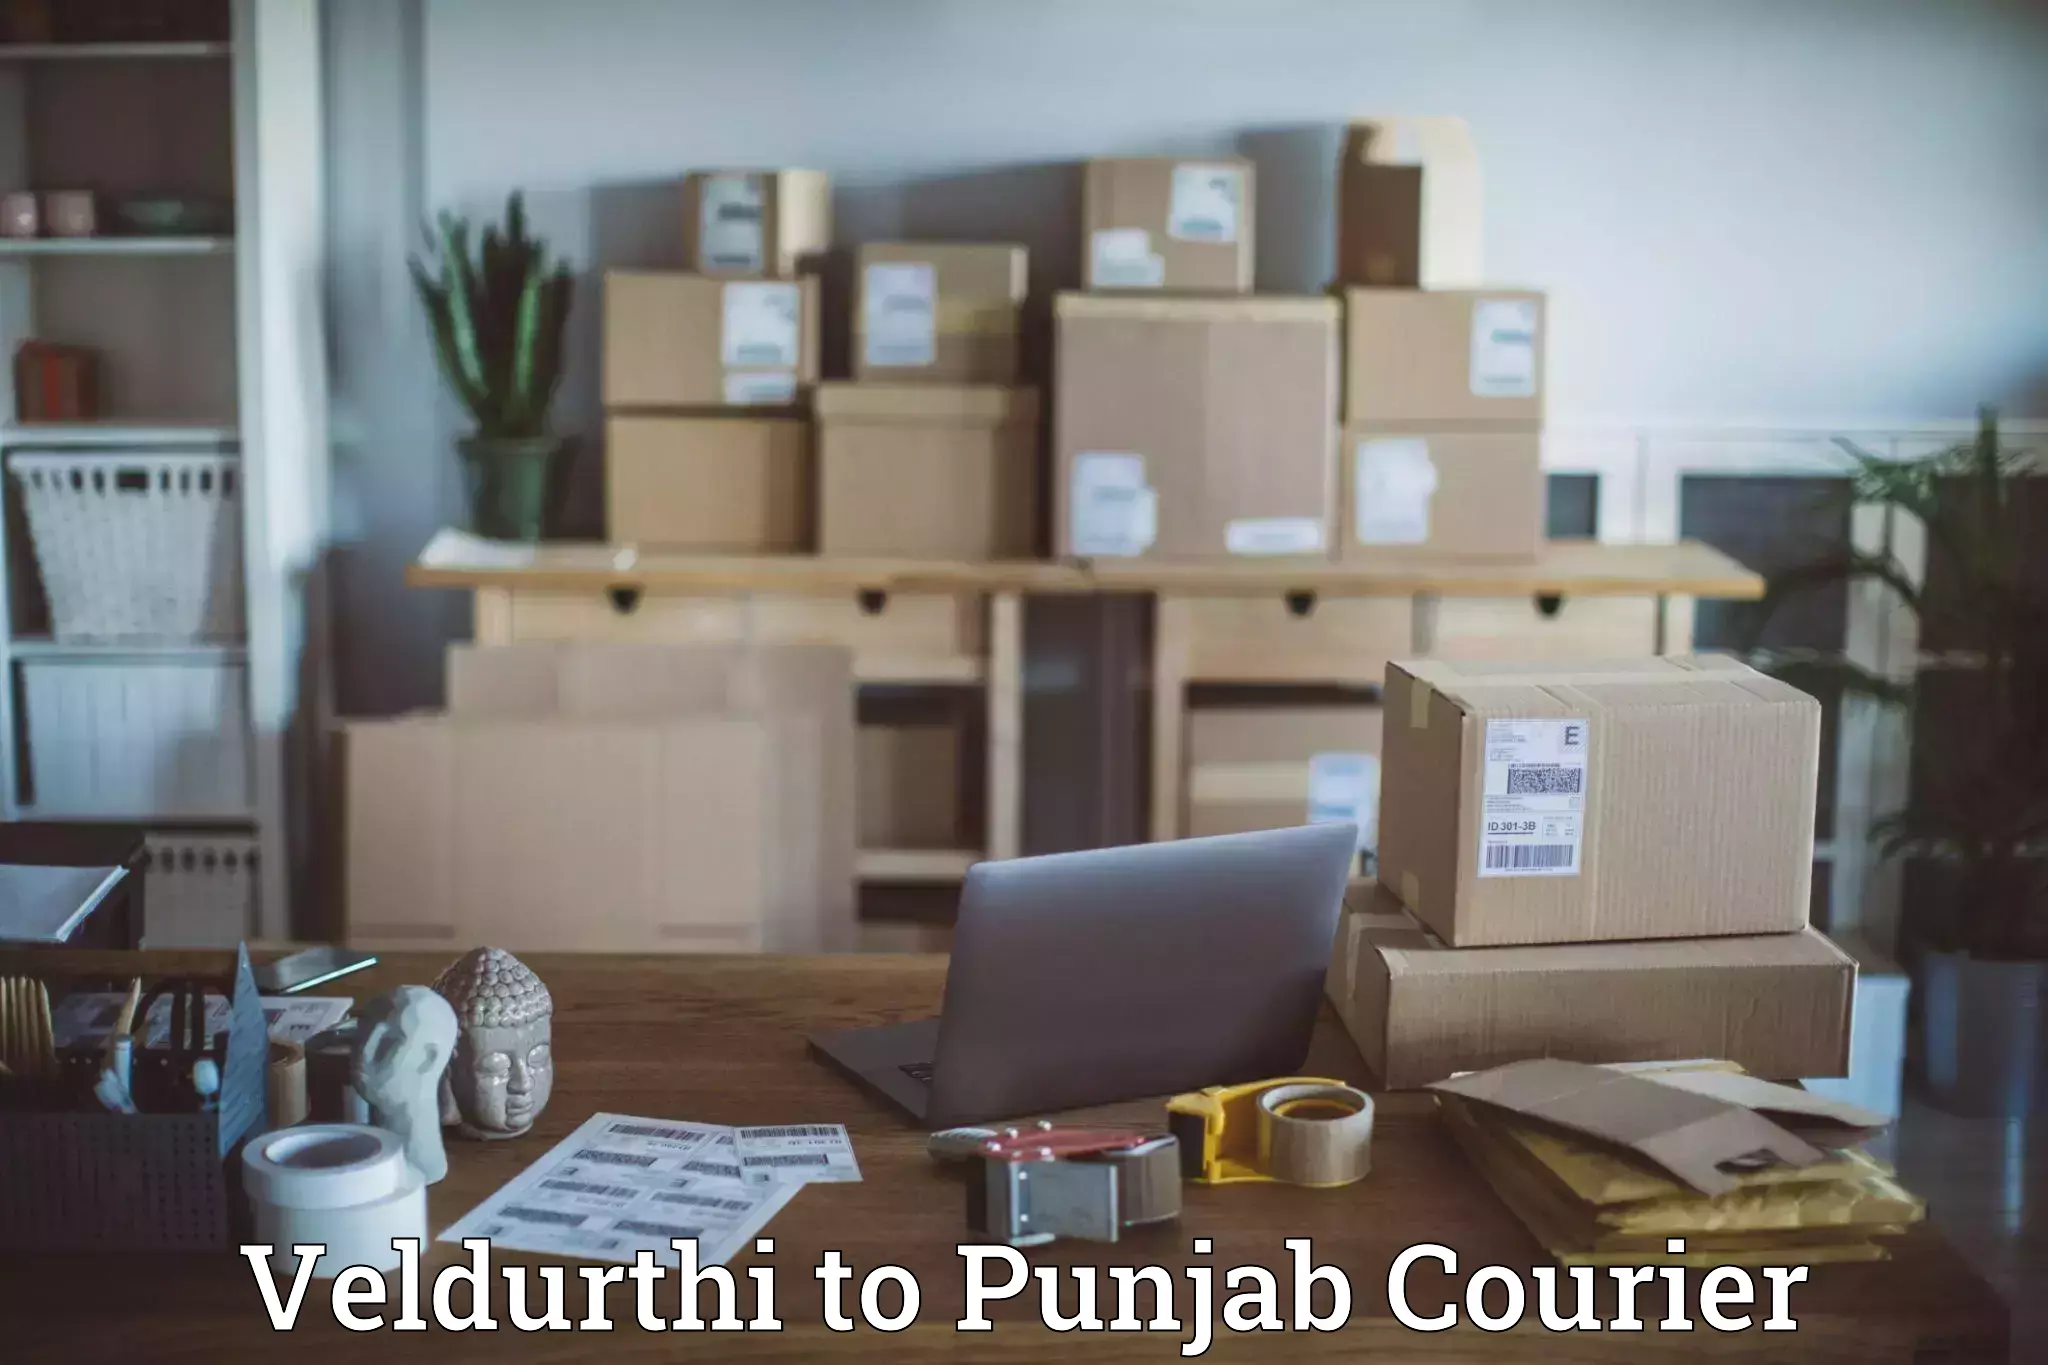 Courier services Veldurthi to Punjab